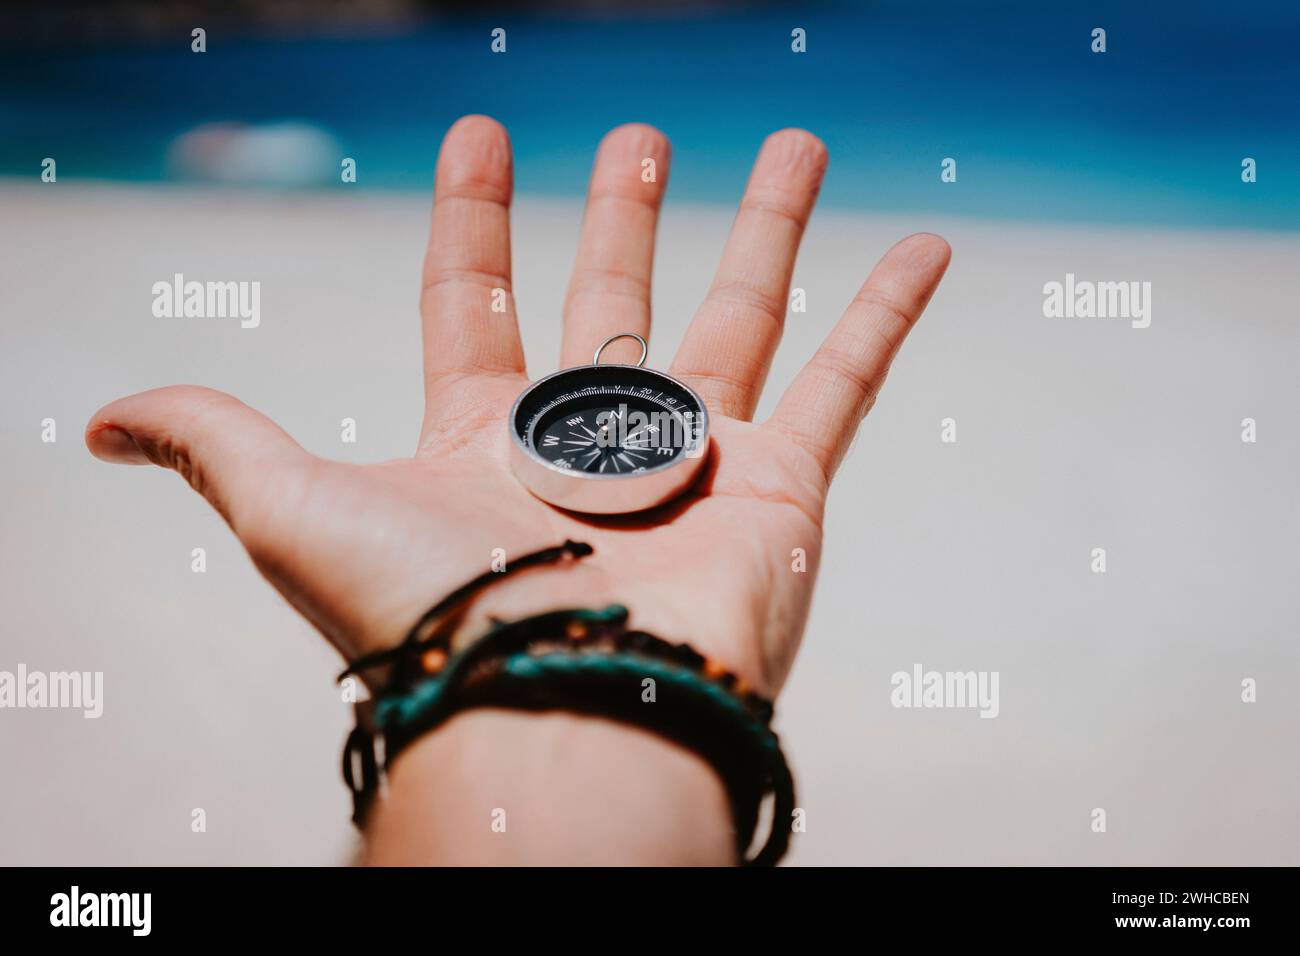 Ouvrez Palm avec les doigts tendus holding black metal boussole contre plage de sable blanc. Trouver votre chemin ou concept objectif. Pov point de vue. Banque D'Images